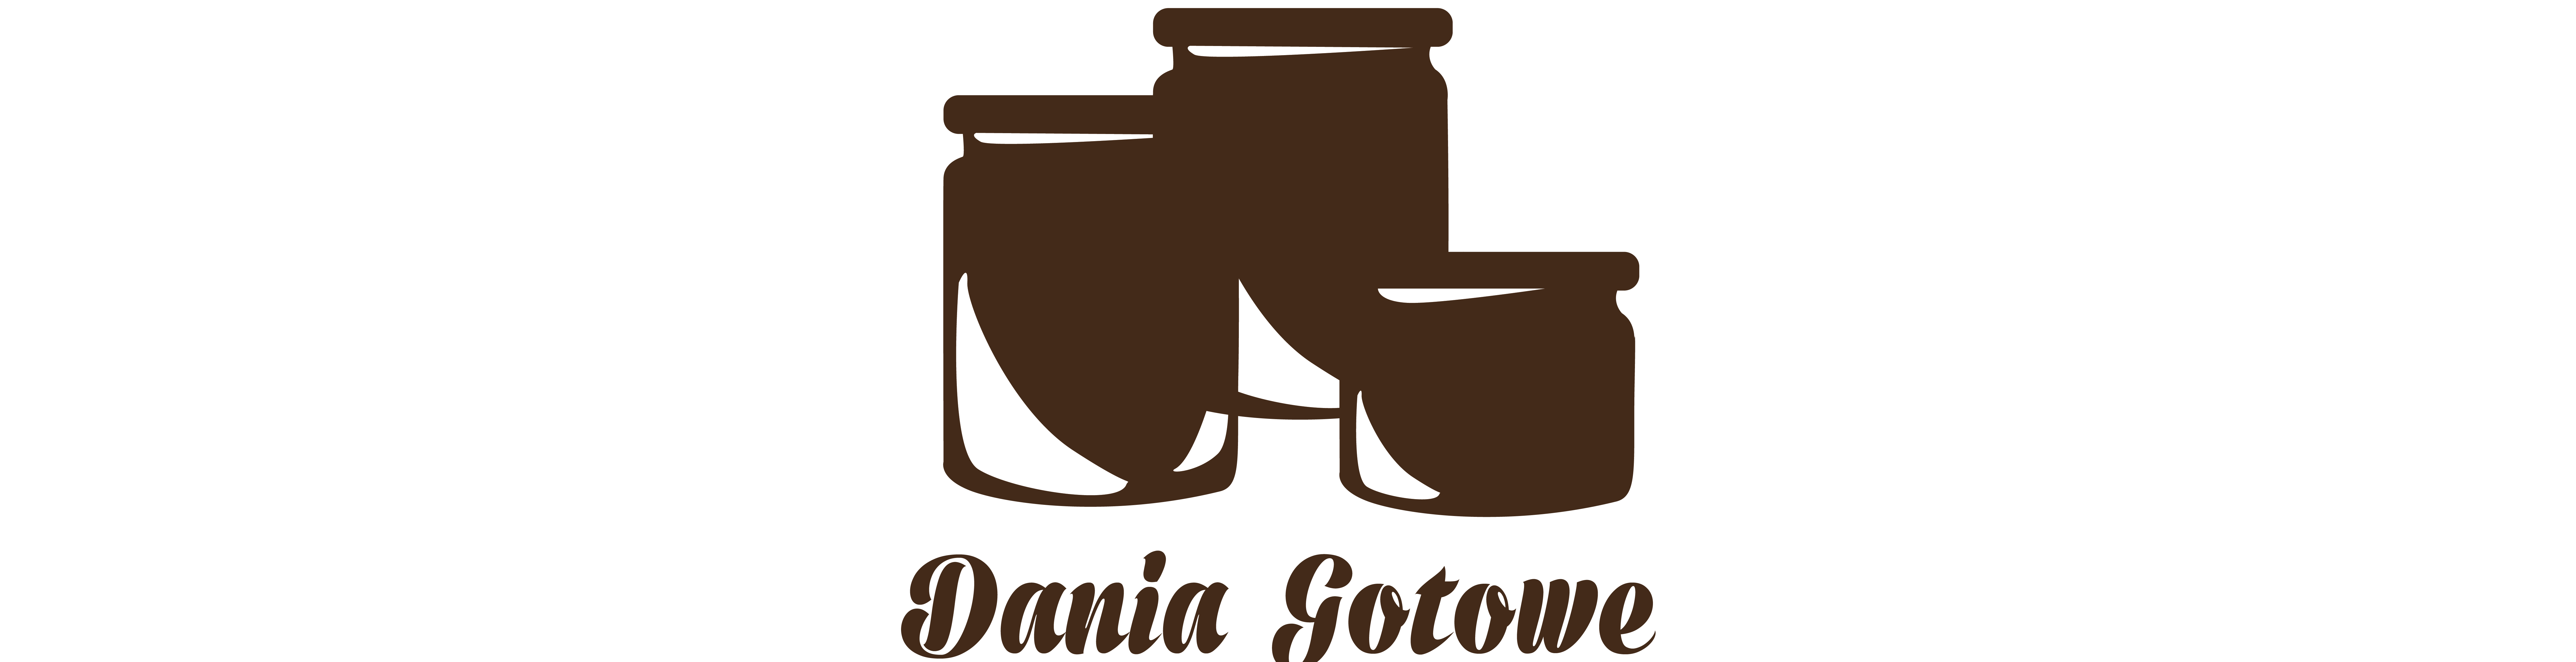 Dania Gotowe